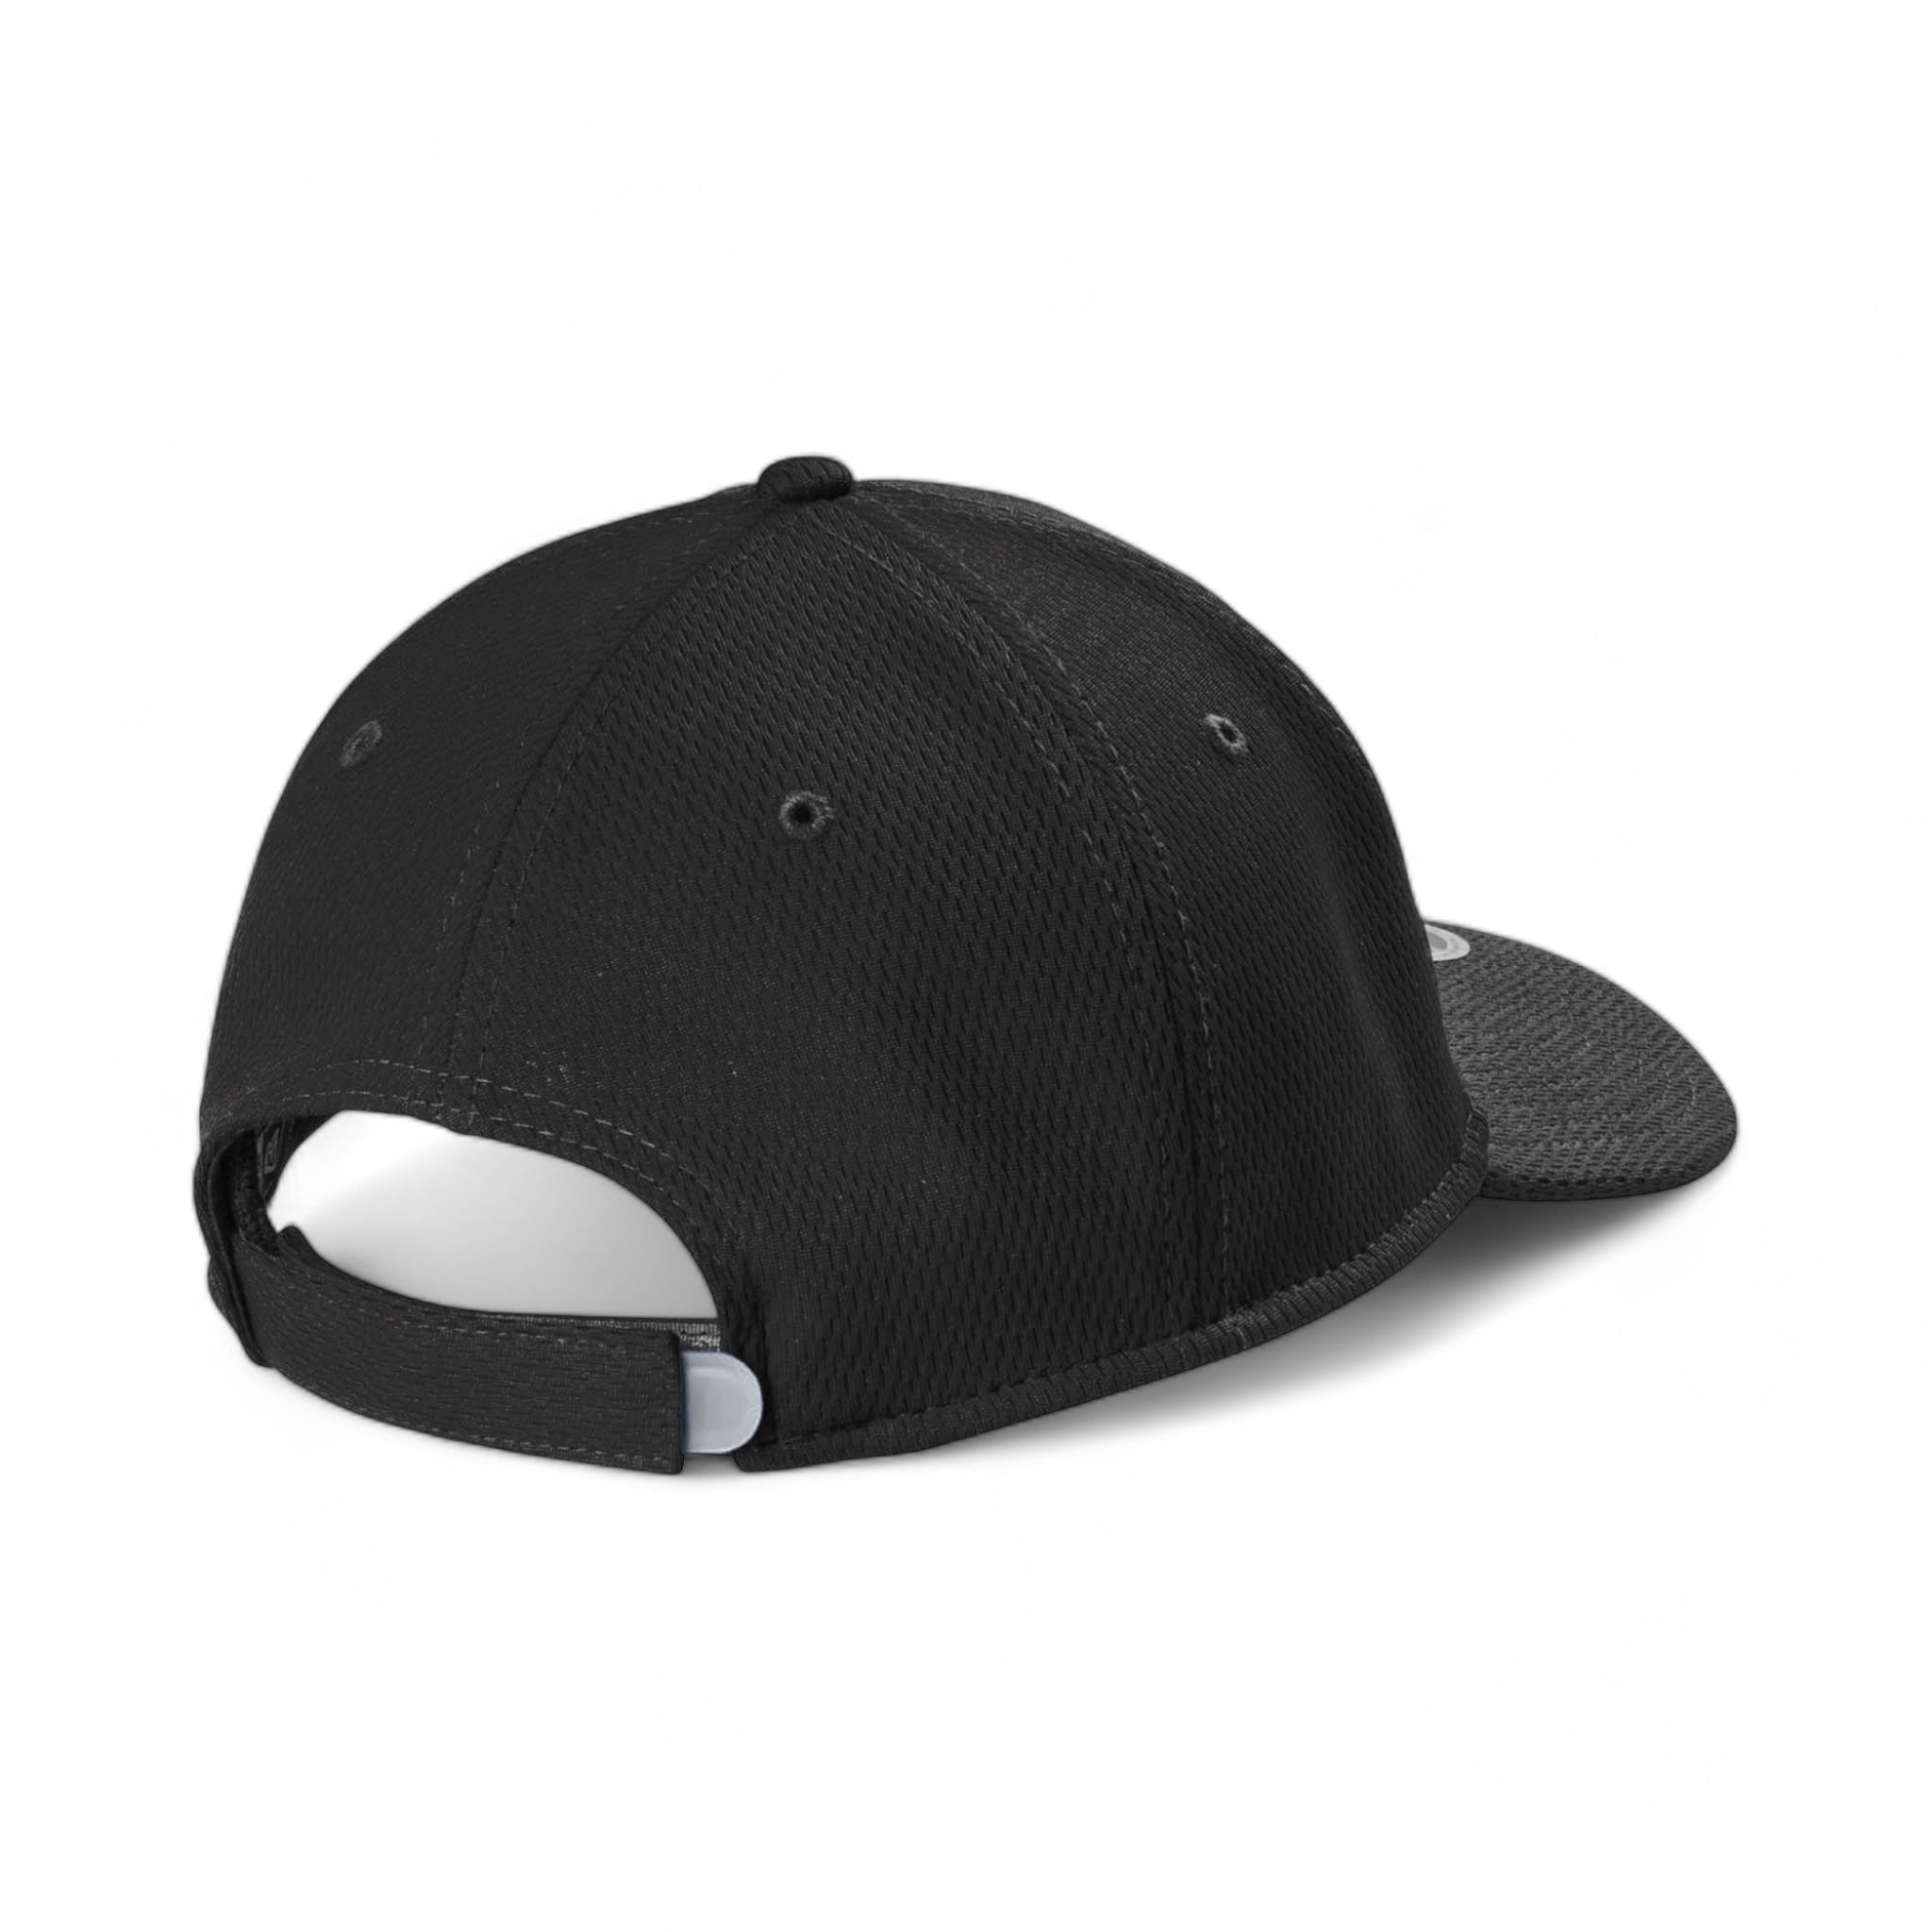 Back view of New Era NE209 custom hat in black